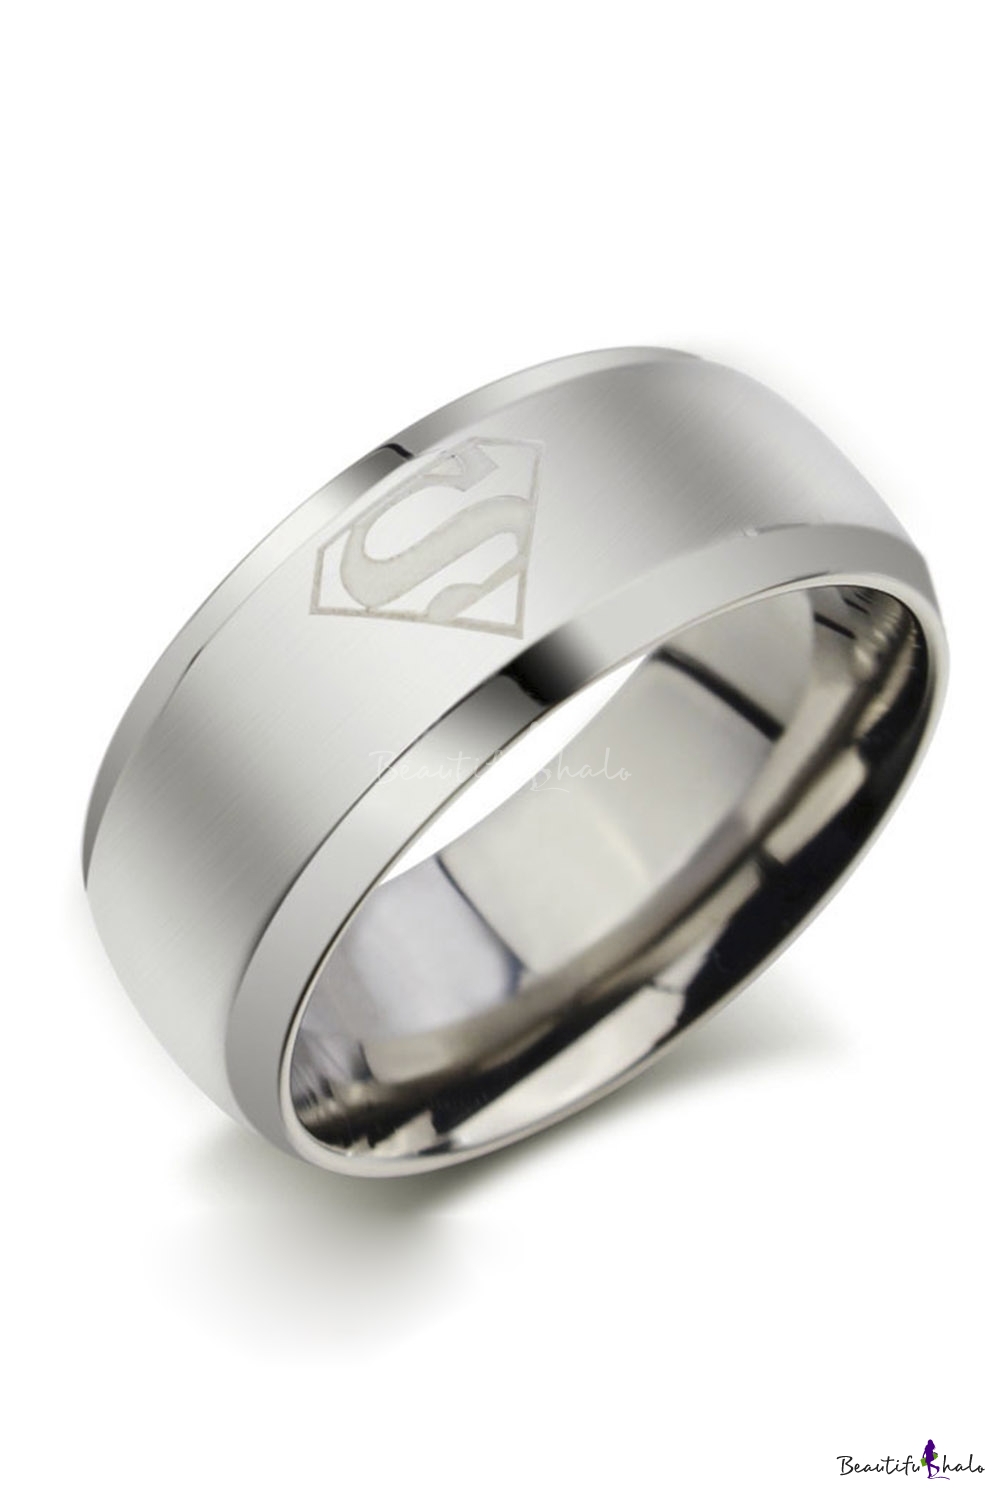 Обручальное кольцо серебро мужское. Stainless Steel кольцо 4700. Stainless Steel кольцо мужское. Брутальные мужские кольца. Мужское обручальное кольцо.